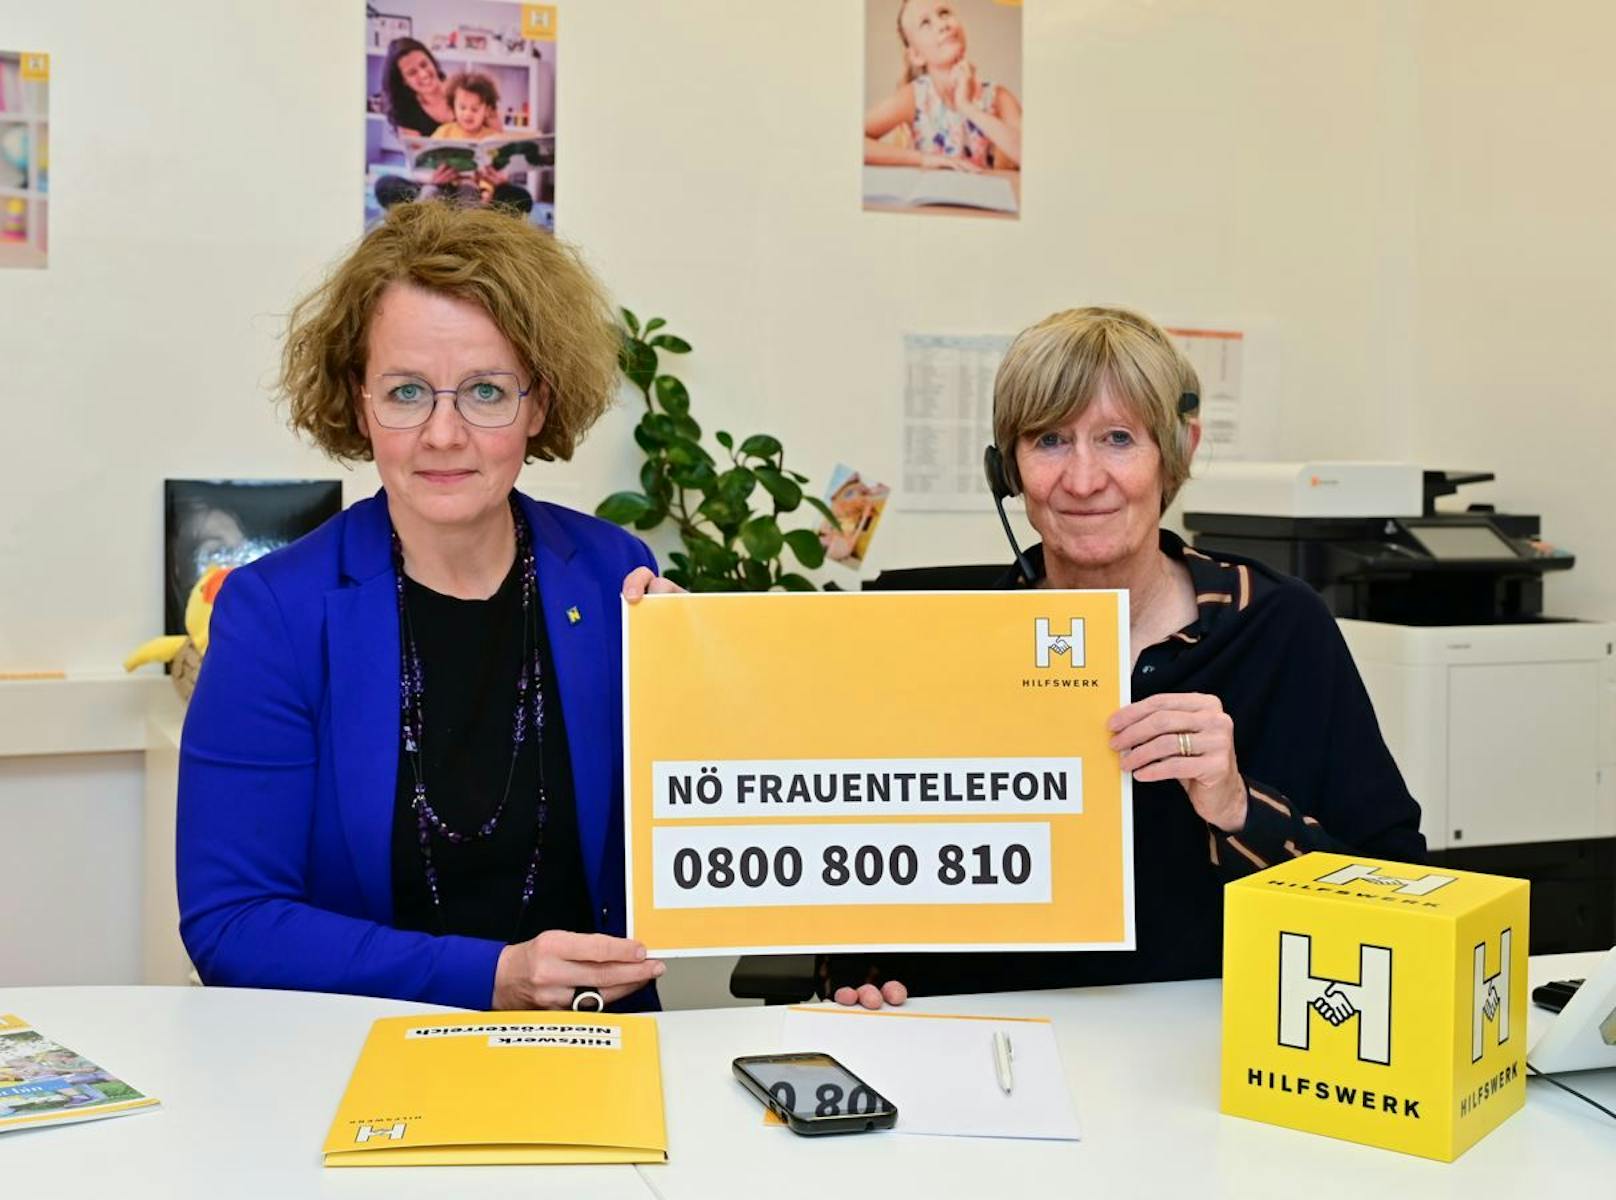 Frauen-Landesrätin Christiane Teschl-Hofmeister und Evelyn Filipsky (NÖ Hilfswerks, Leitung Angebotsbereich Psychosoziales) beim NÖ Frauentelefon.